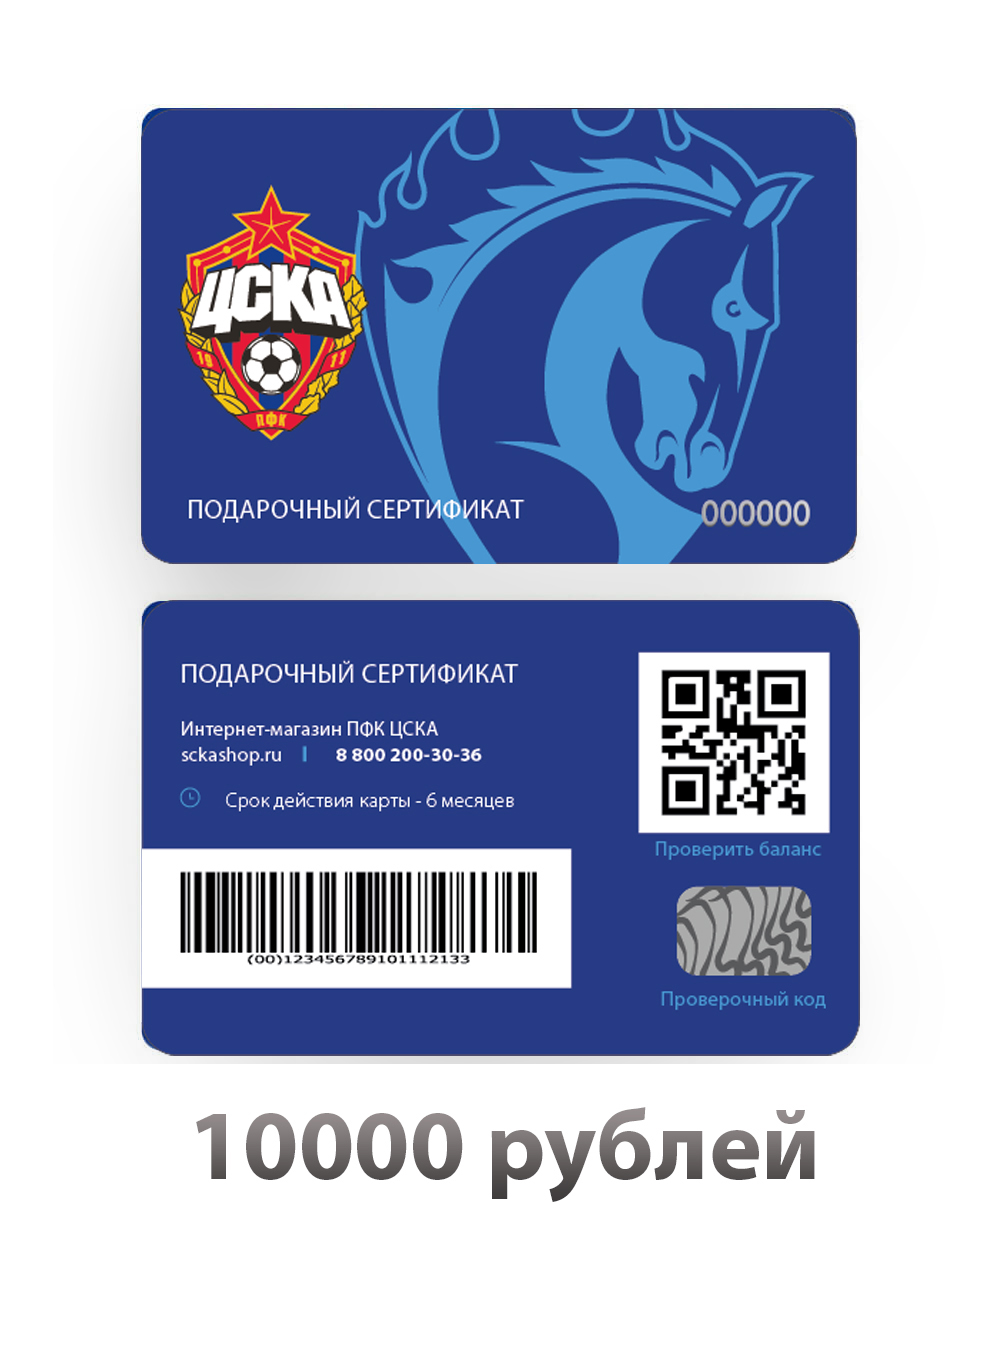 Подарочный сертификат на 10000 рублей (Подарочная карта на 10000 рублей) от Cskashop